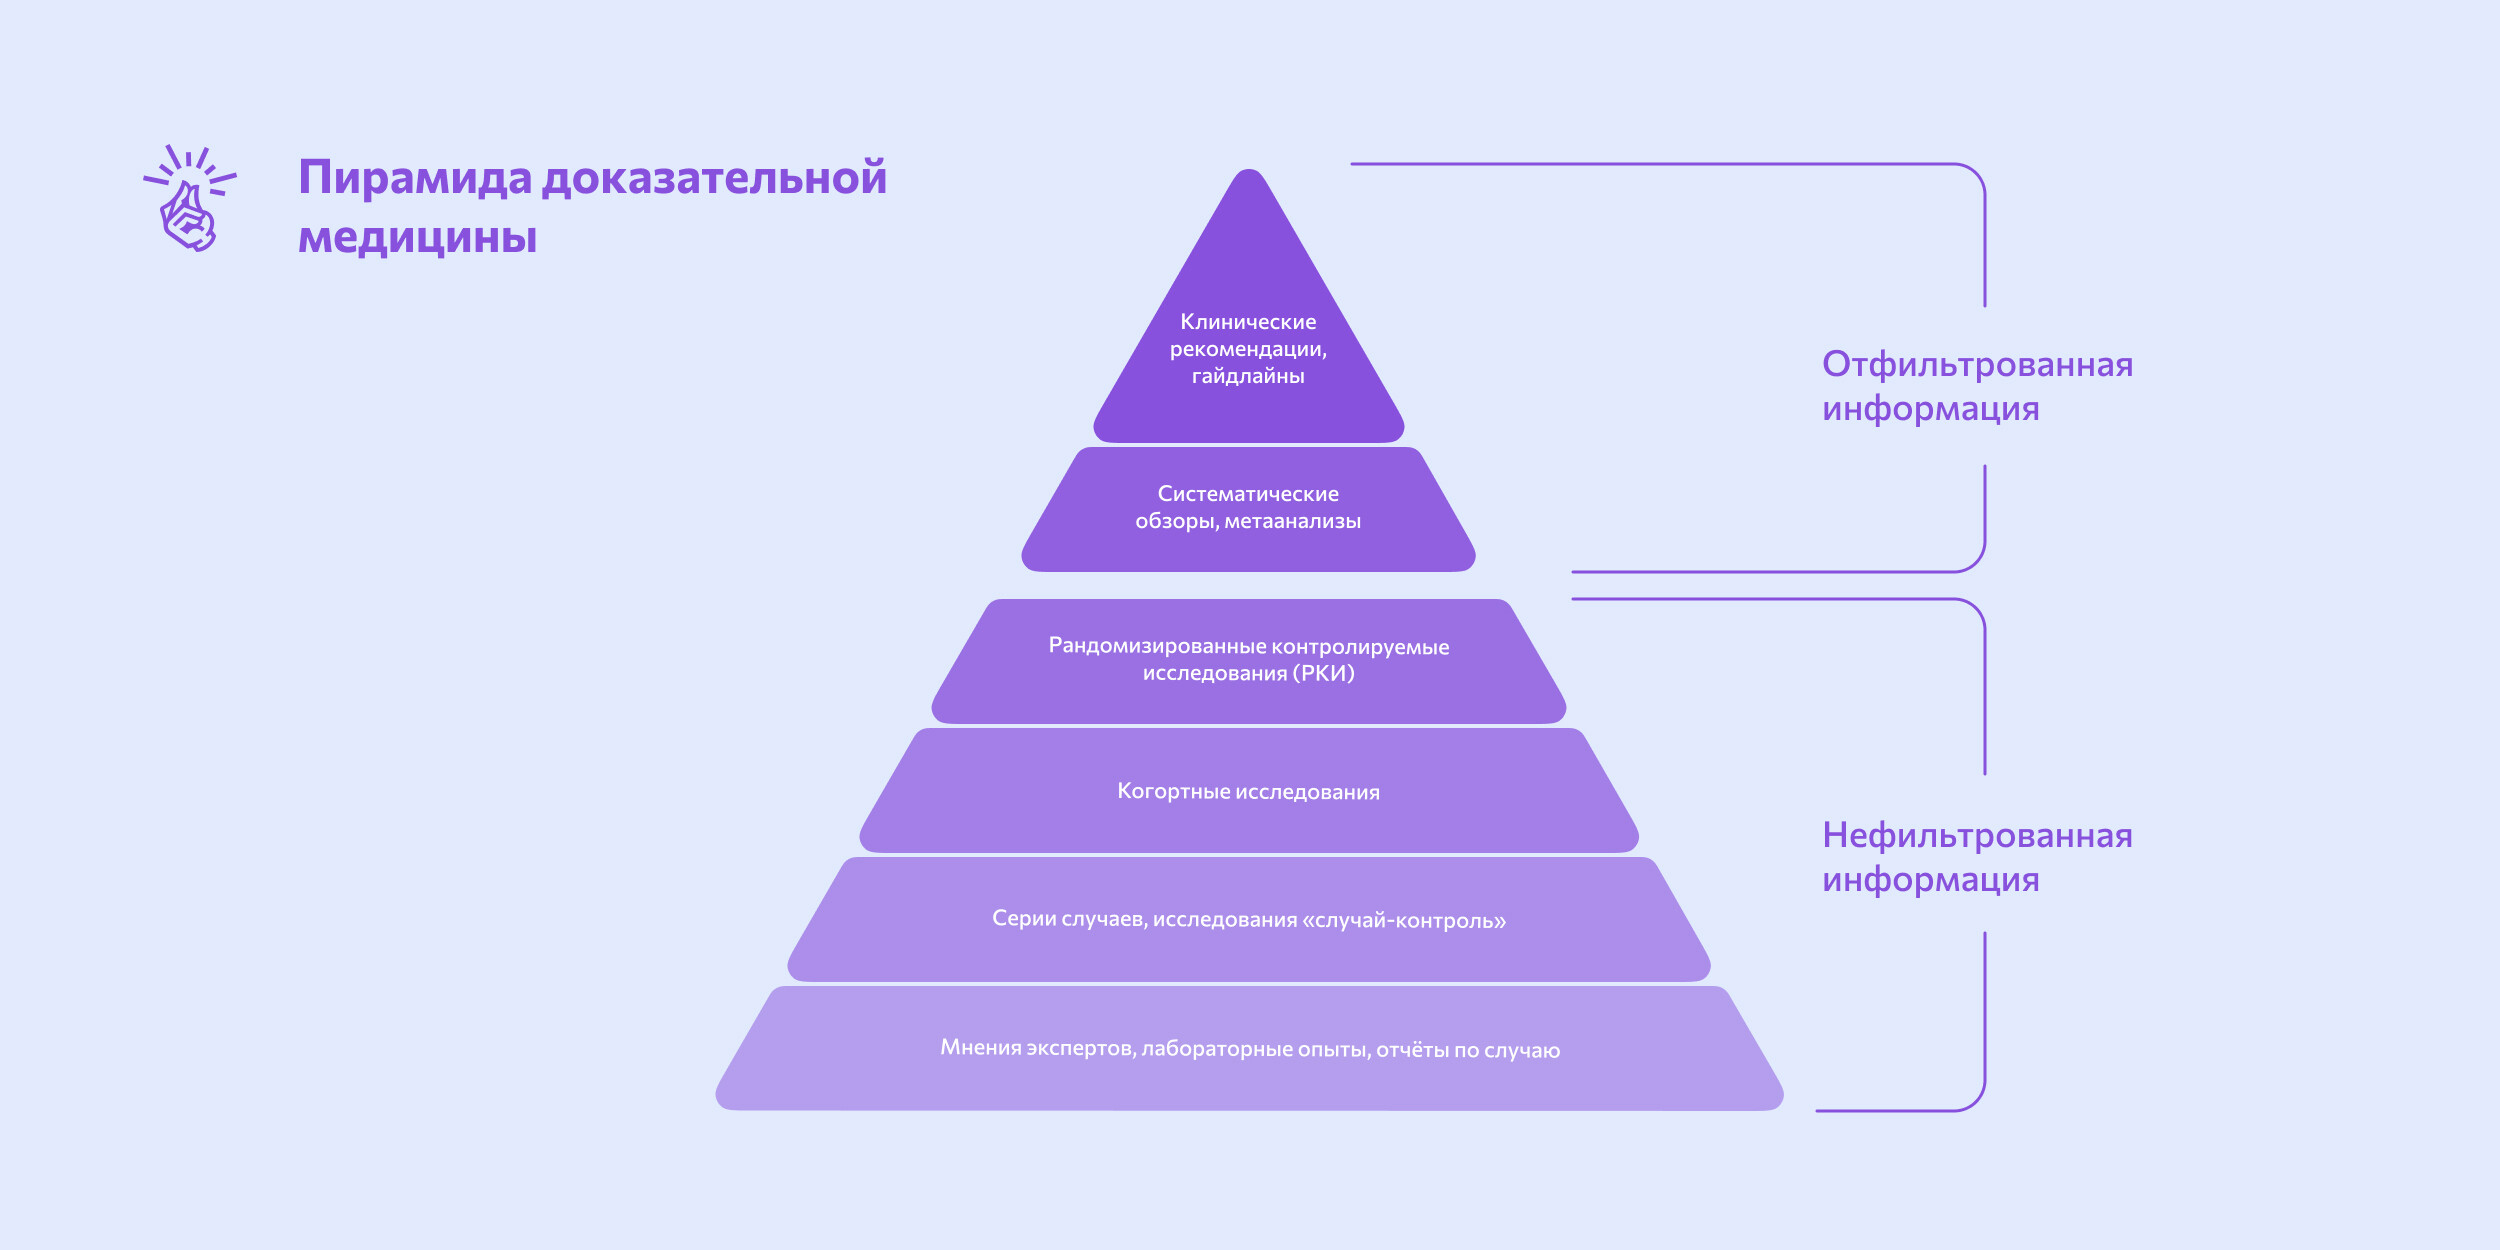 Как читать о здоровье в интернете: пирамида доказательной медицины